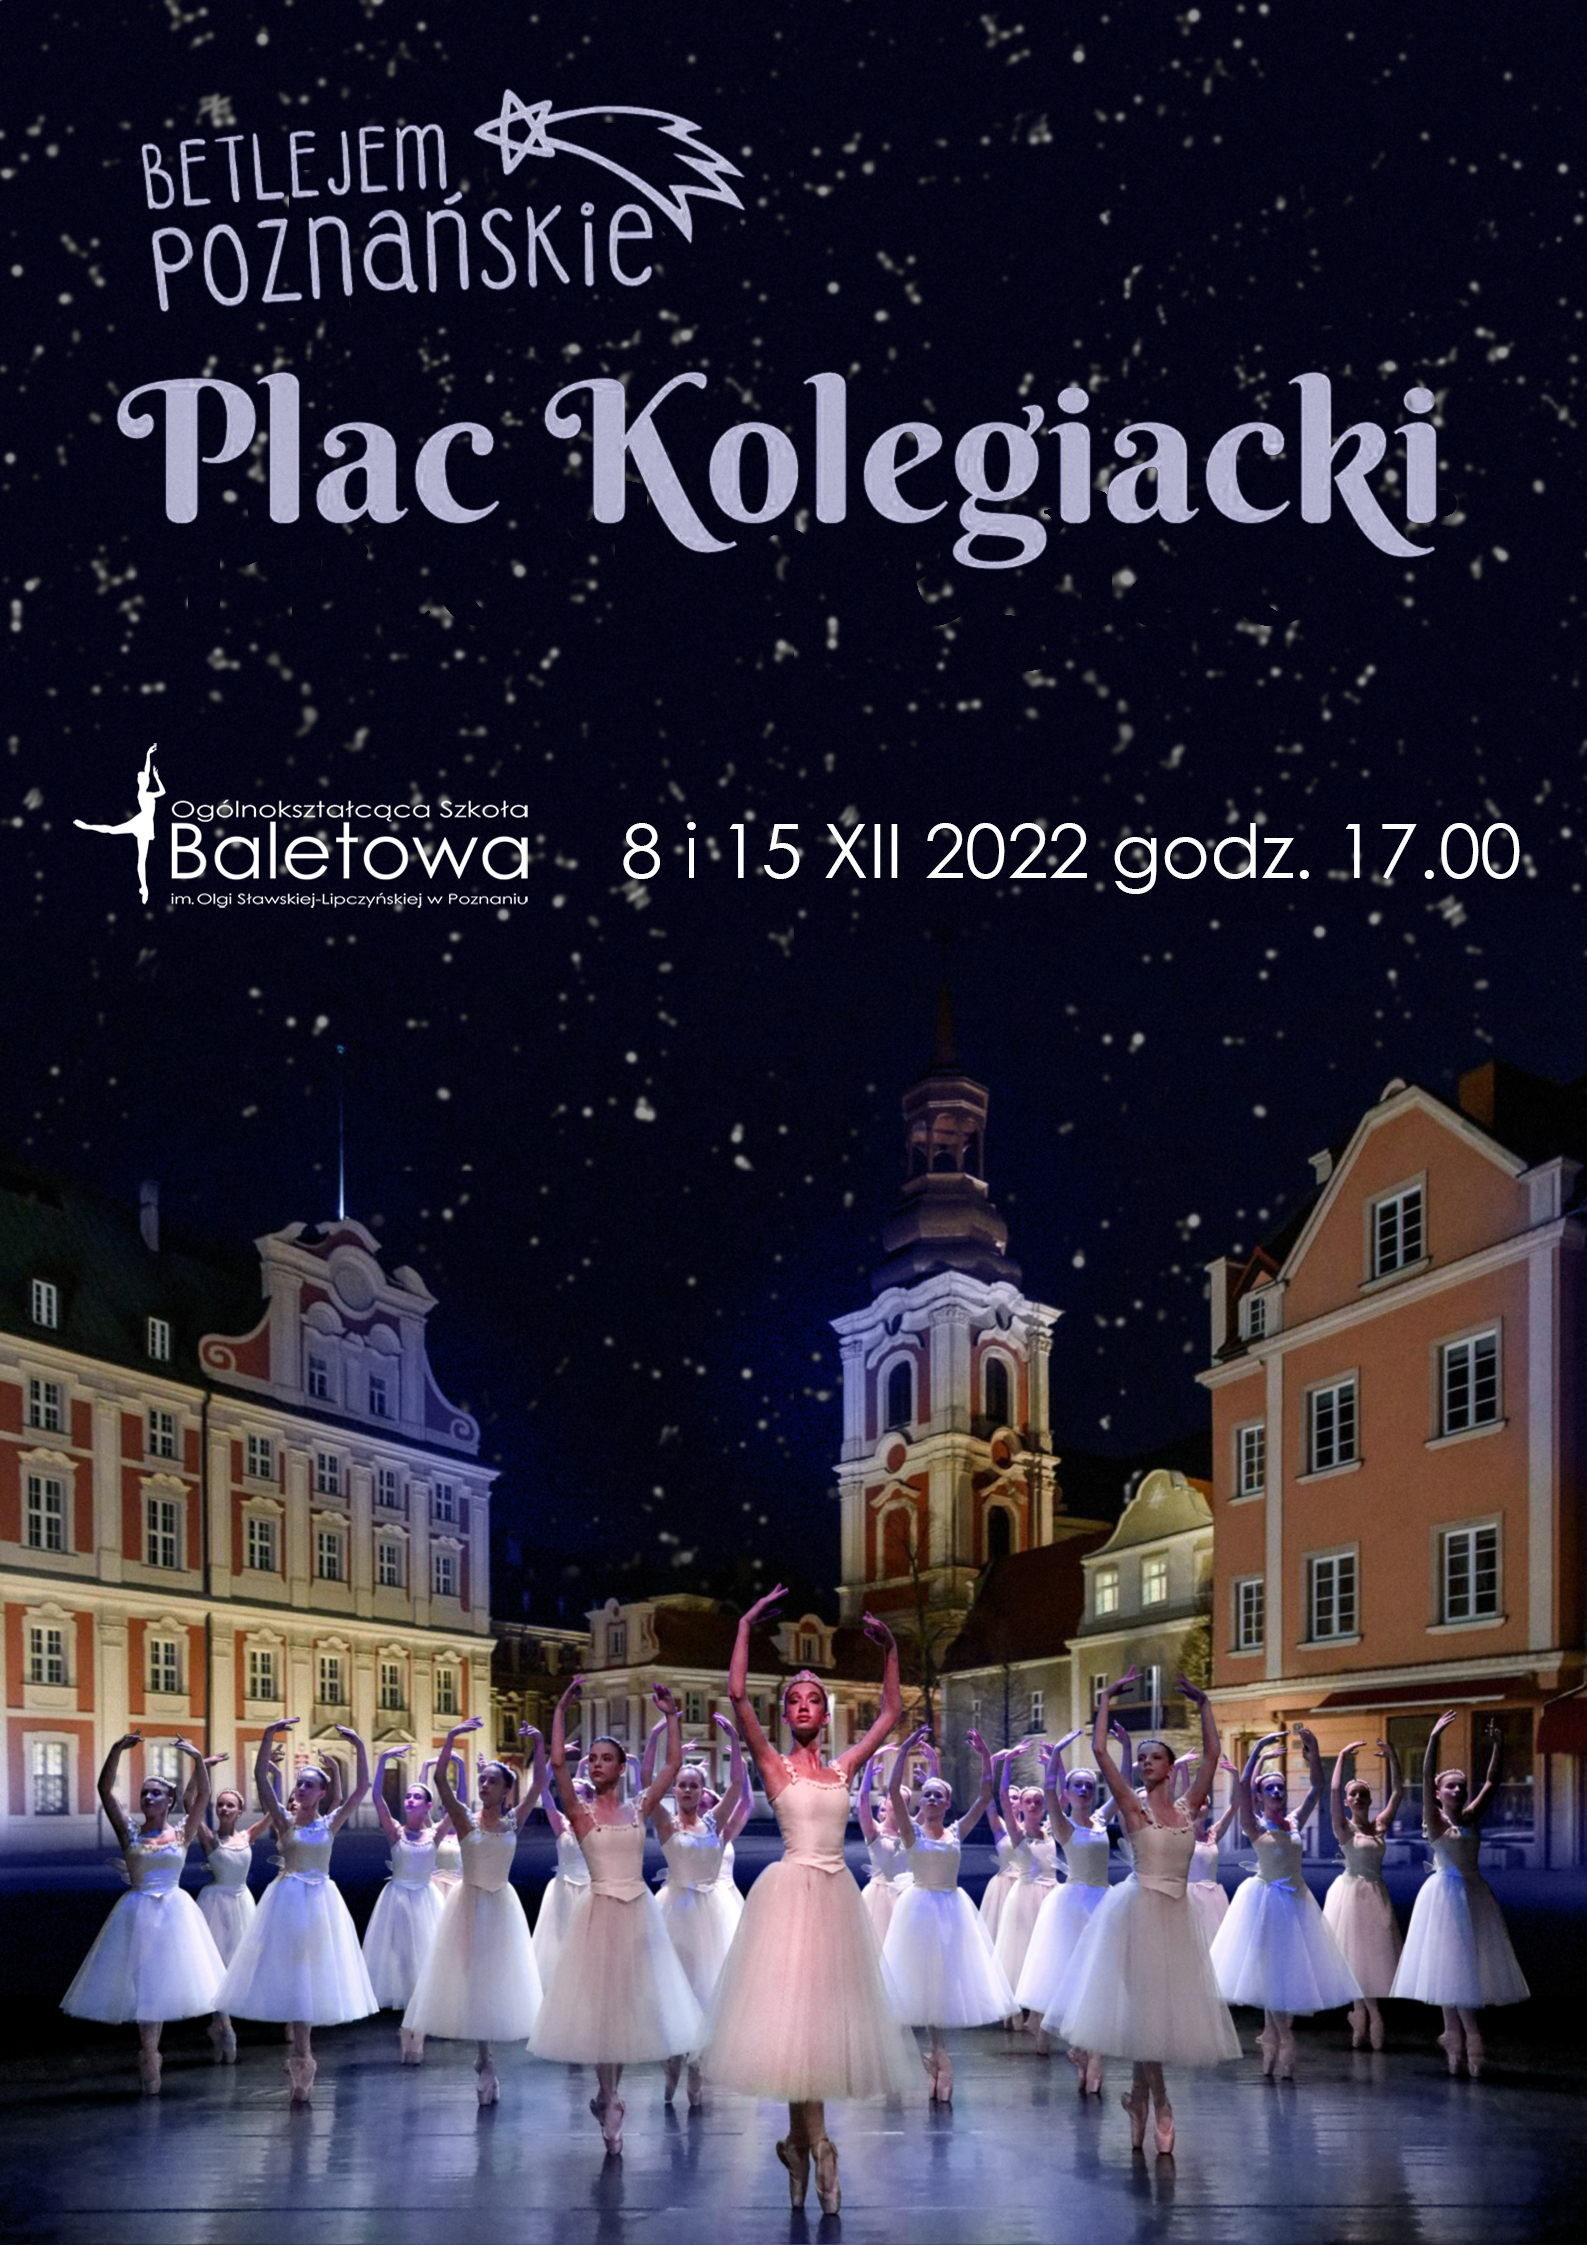 Plac Kolegiacki, na pierwszym planie kilkanaścioro baletnic w tańcu, w głębi po lewej budynek Urzędu Miasta Poznania, w środku wieża kościoła , po prawej kamienice miejskie. U góry na tle ciemnego rozgwieżdżonego nieba napisy Betlejem Poznańskie, Plac Kolegiacki, poniżej po lewej logo szkoły baletowej tj. biały obrys baletnicy w tańcu, po prawej napis - data 8 i 15 grudnia 2022 roku, godzina 17:00. 